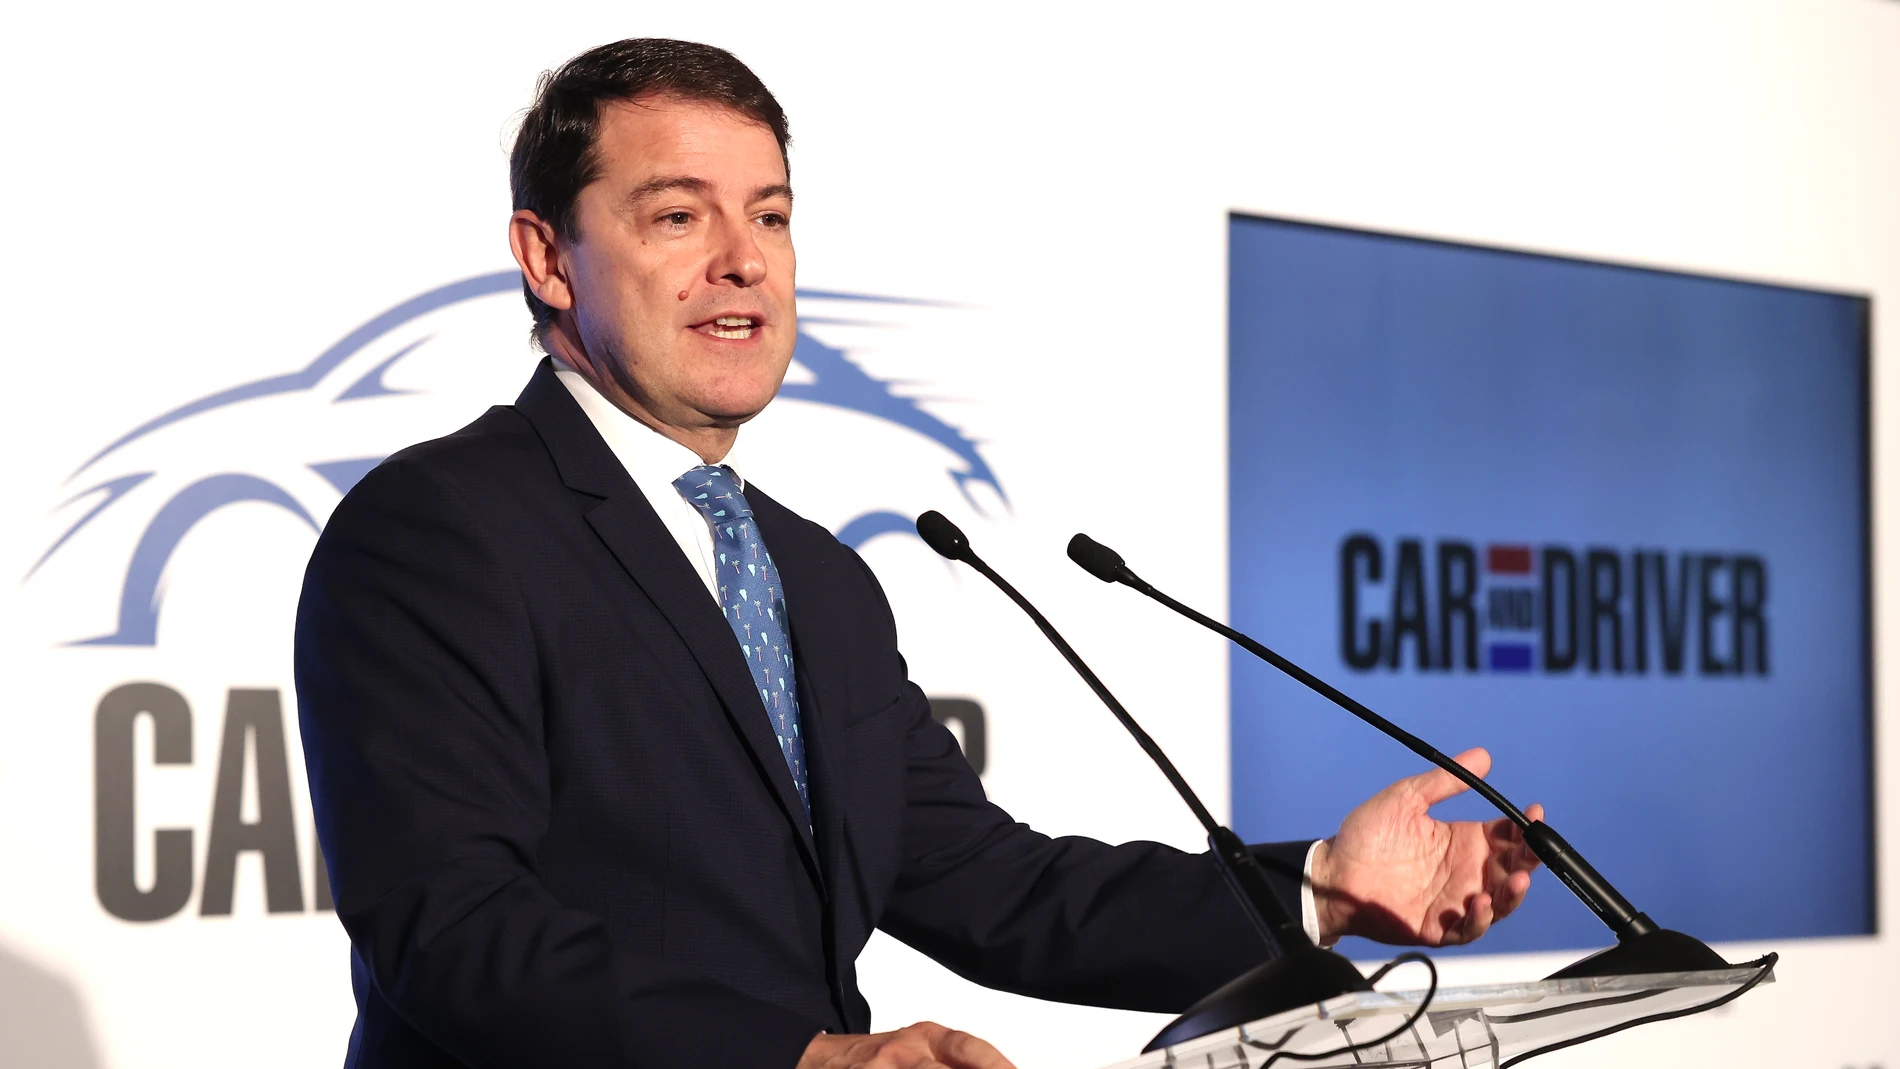 El presidente de la Junta, Alfonso Fernández Mañueco, participa en la entrega de los premios Card&Drive